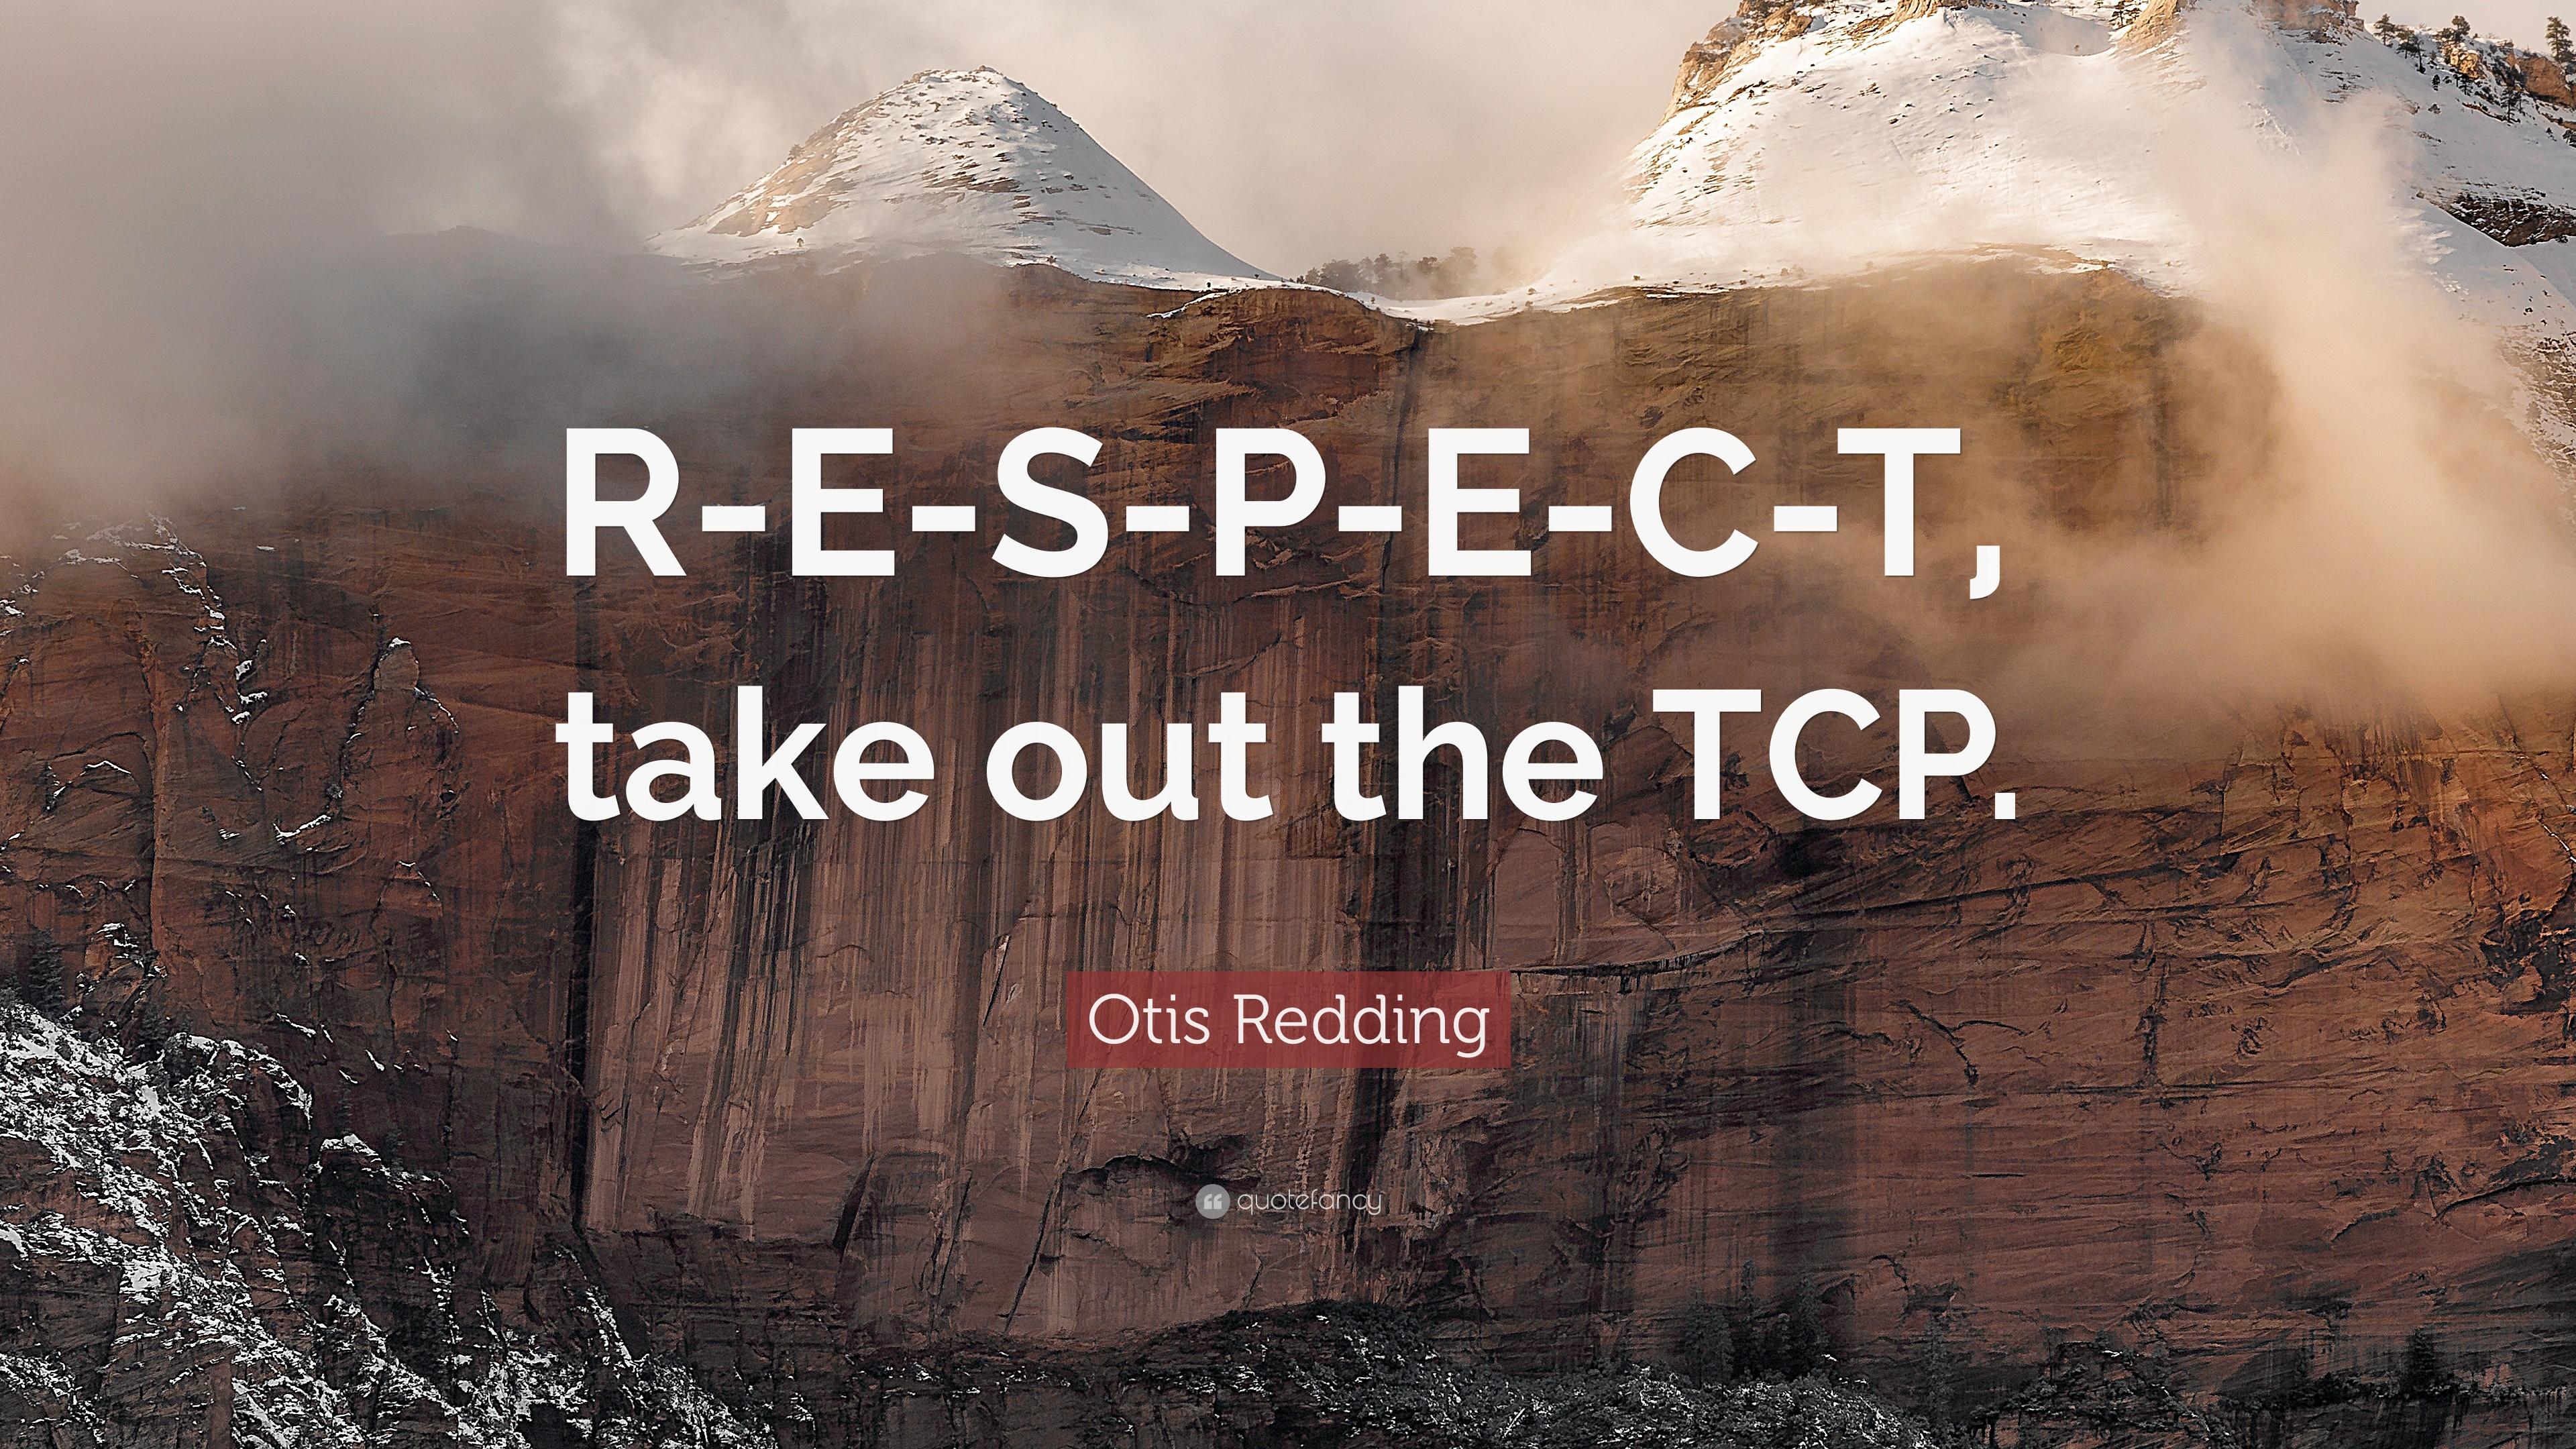 Otis Redding Quote: “R E S P E C T, Take Out The TCP.” 12